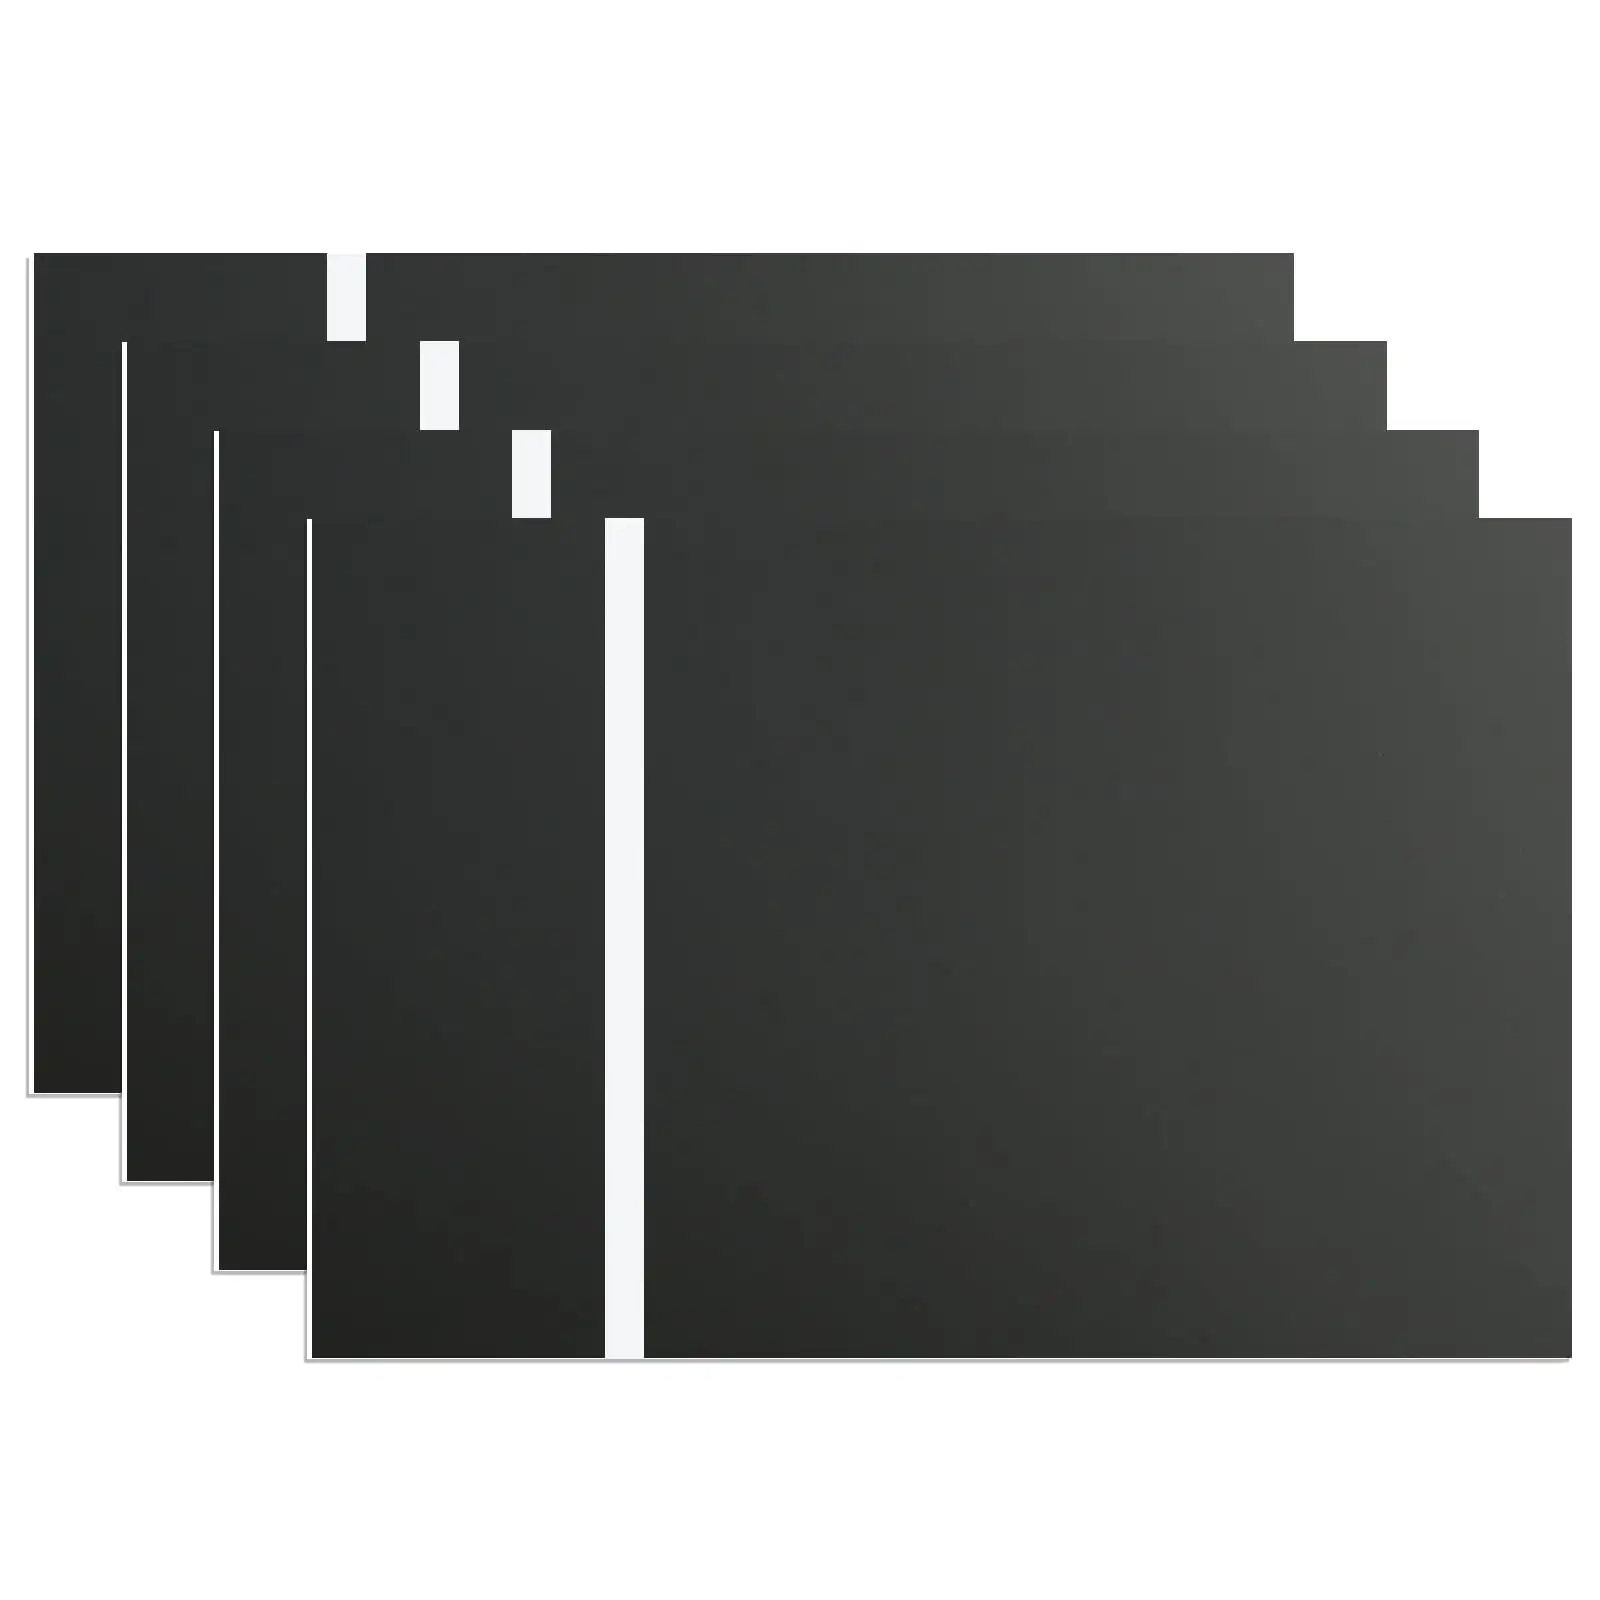 Láser de alta calidad/grabado CNC Abs hoja de plástico de doble Color/tablero/panel/placa negro sobre blanco para publicidad